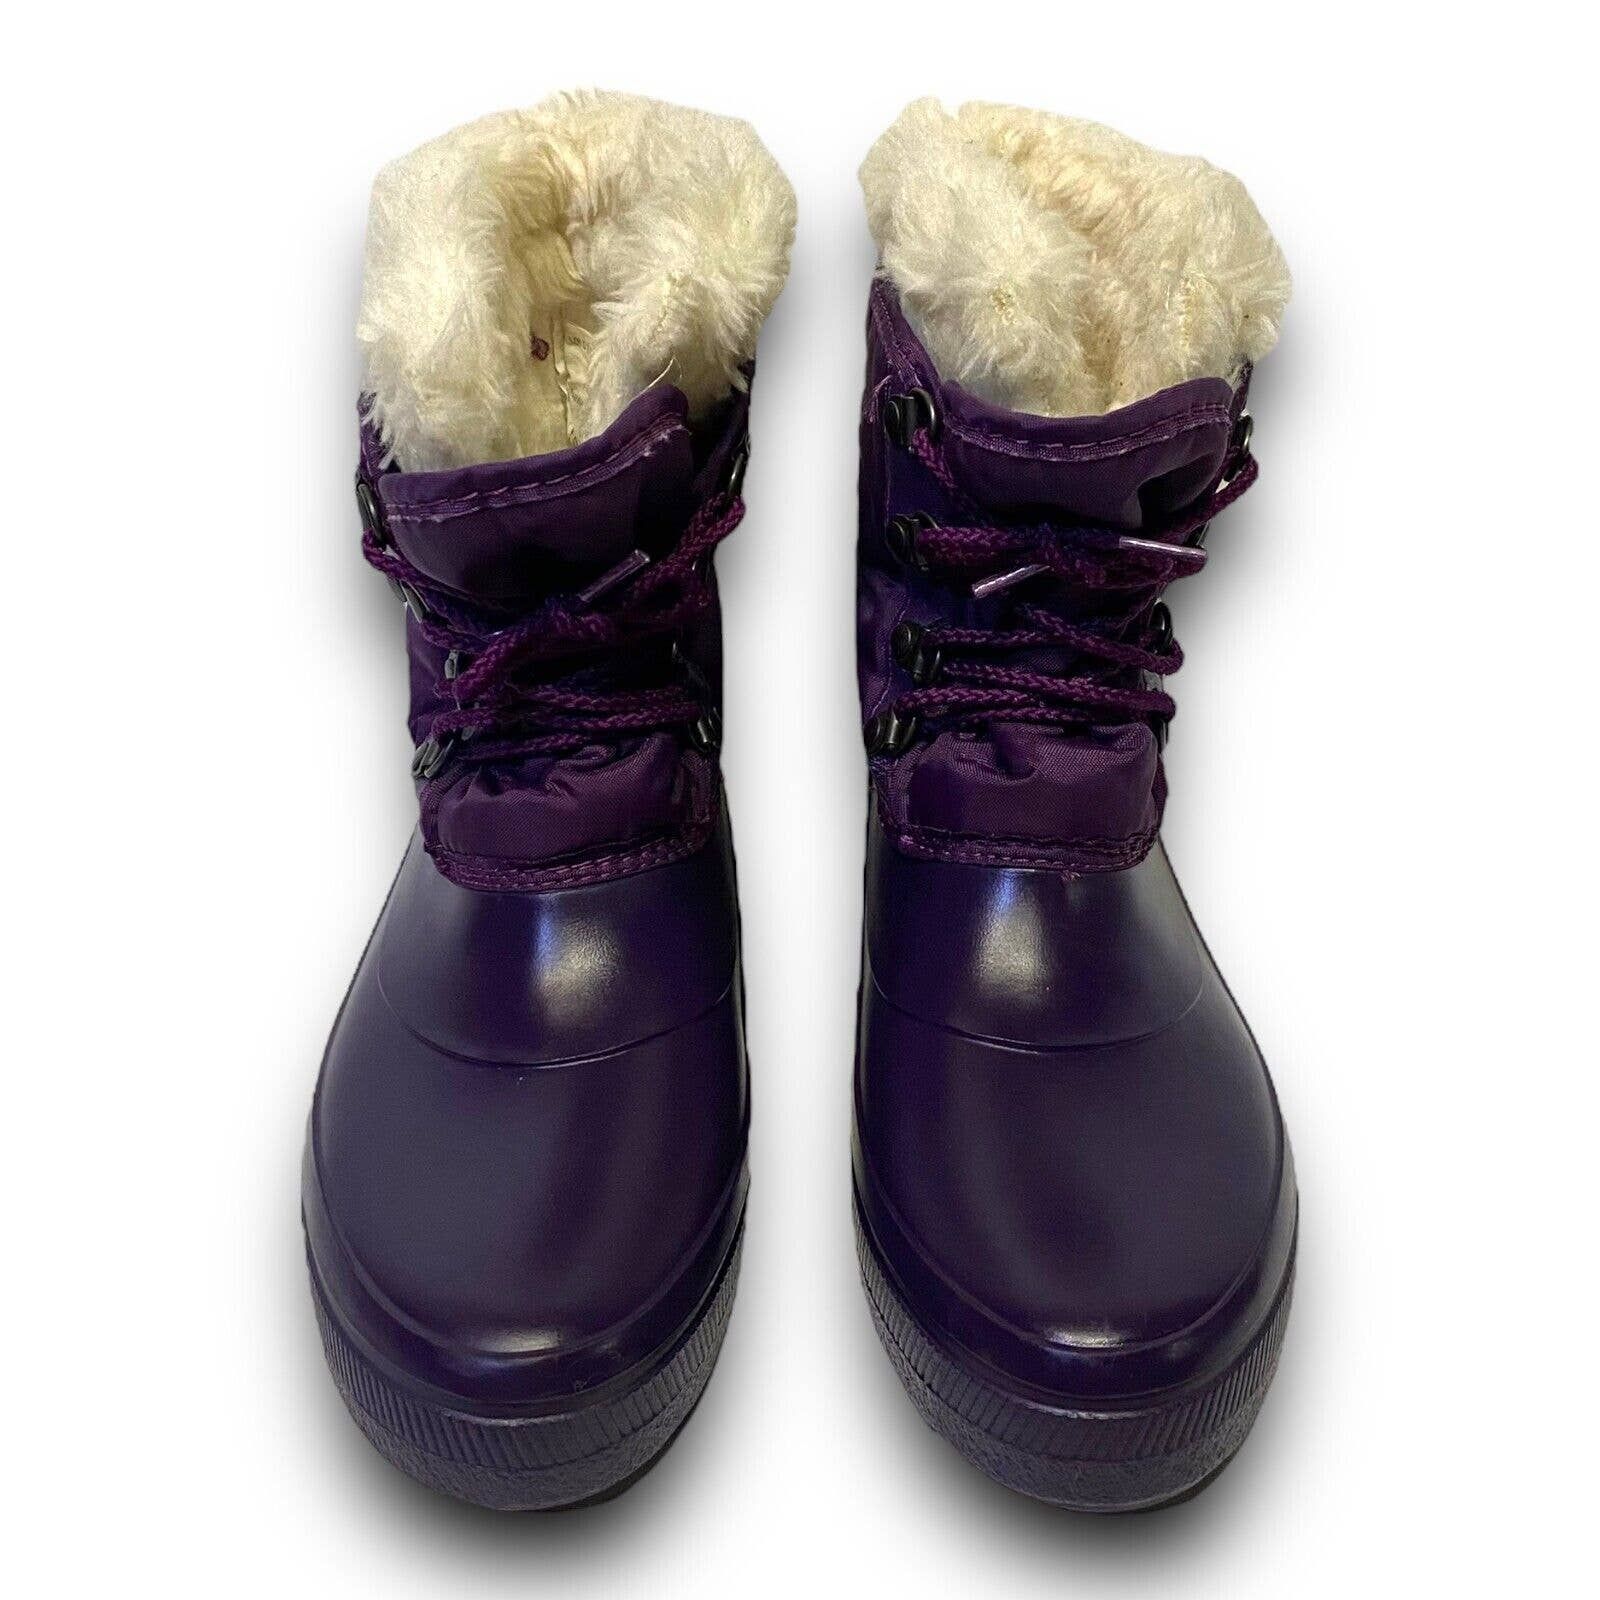 Vintage Vintage Sorel Purple Fur Lined Rubber Winter Rain Snow Boots Size US 5 / IT 35 - 5 Thumbnail